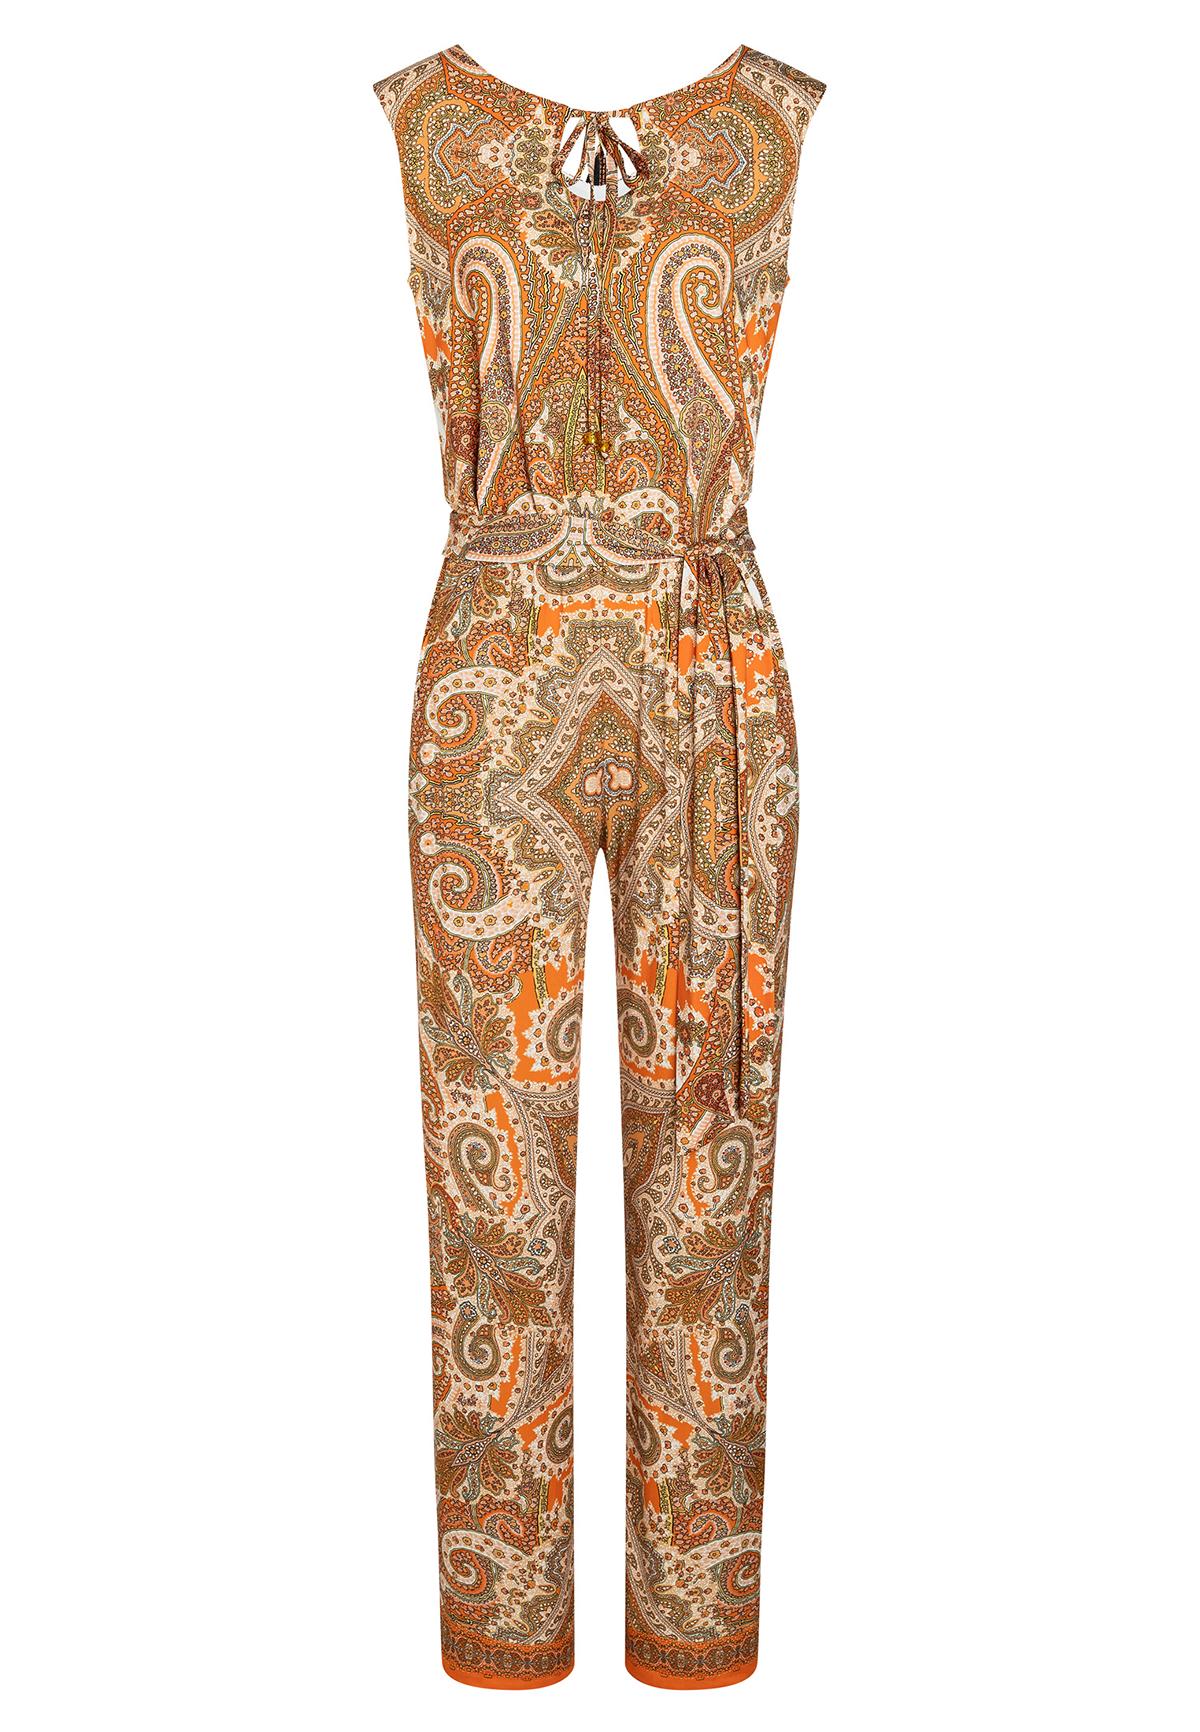 Noord Kleren Naschrift Mouwloos Jumpsuit Fidlea in Oranje met Paisley Print | Ana Alcazar